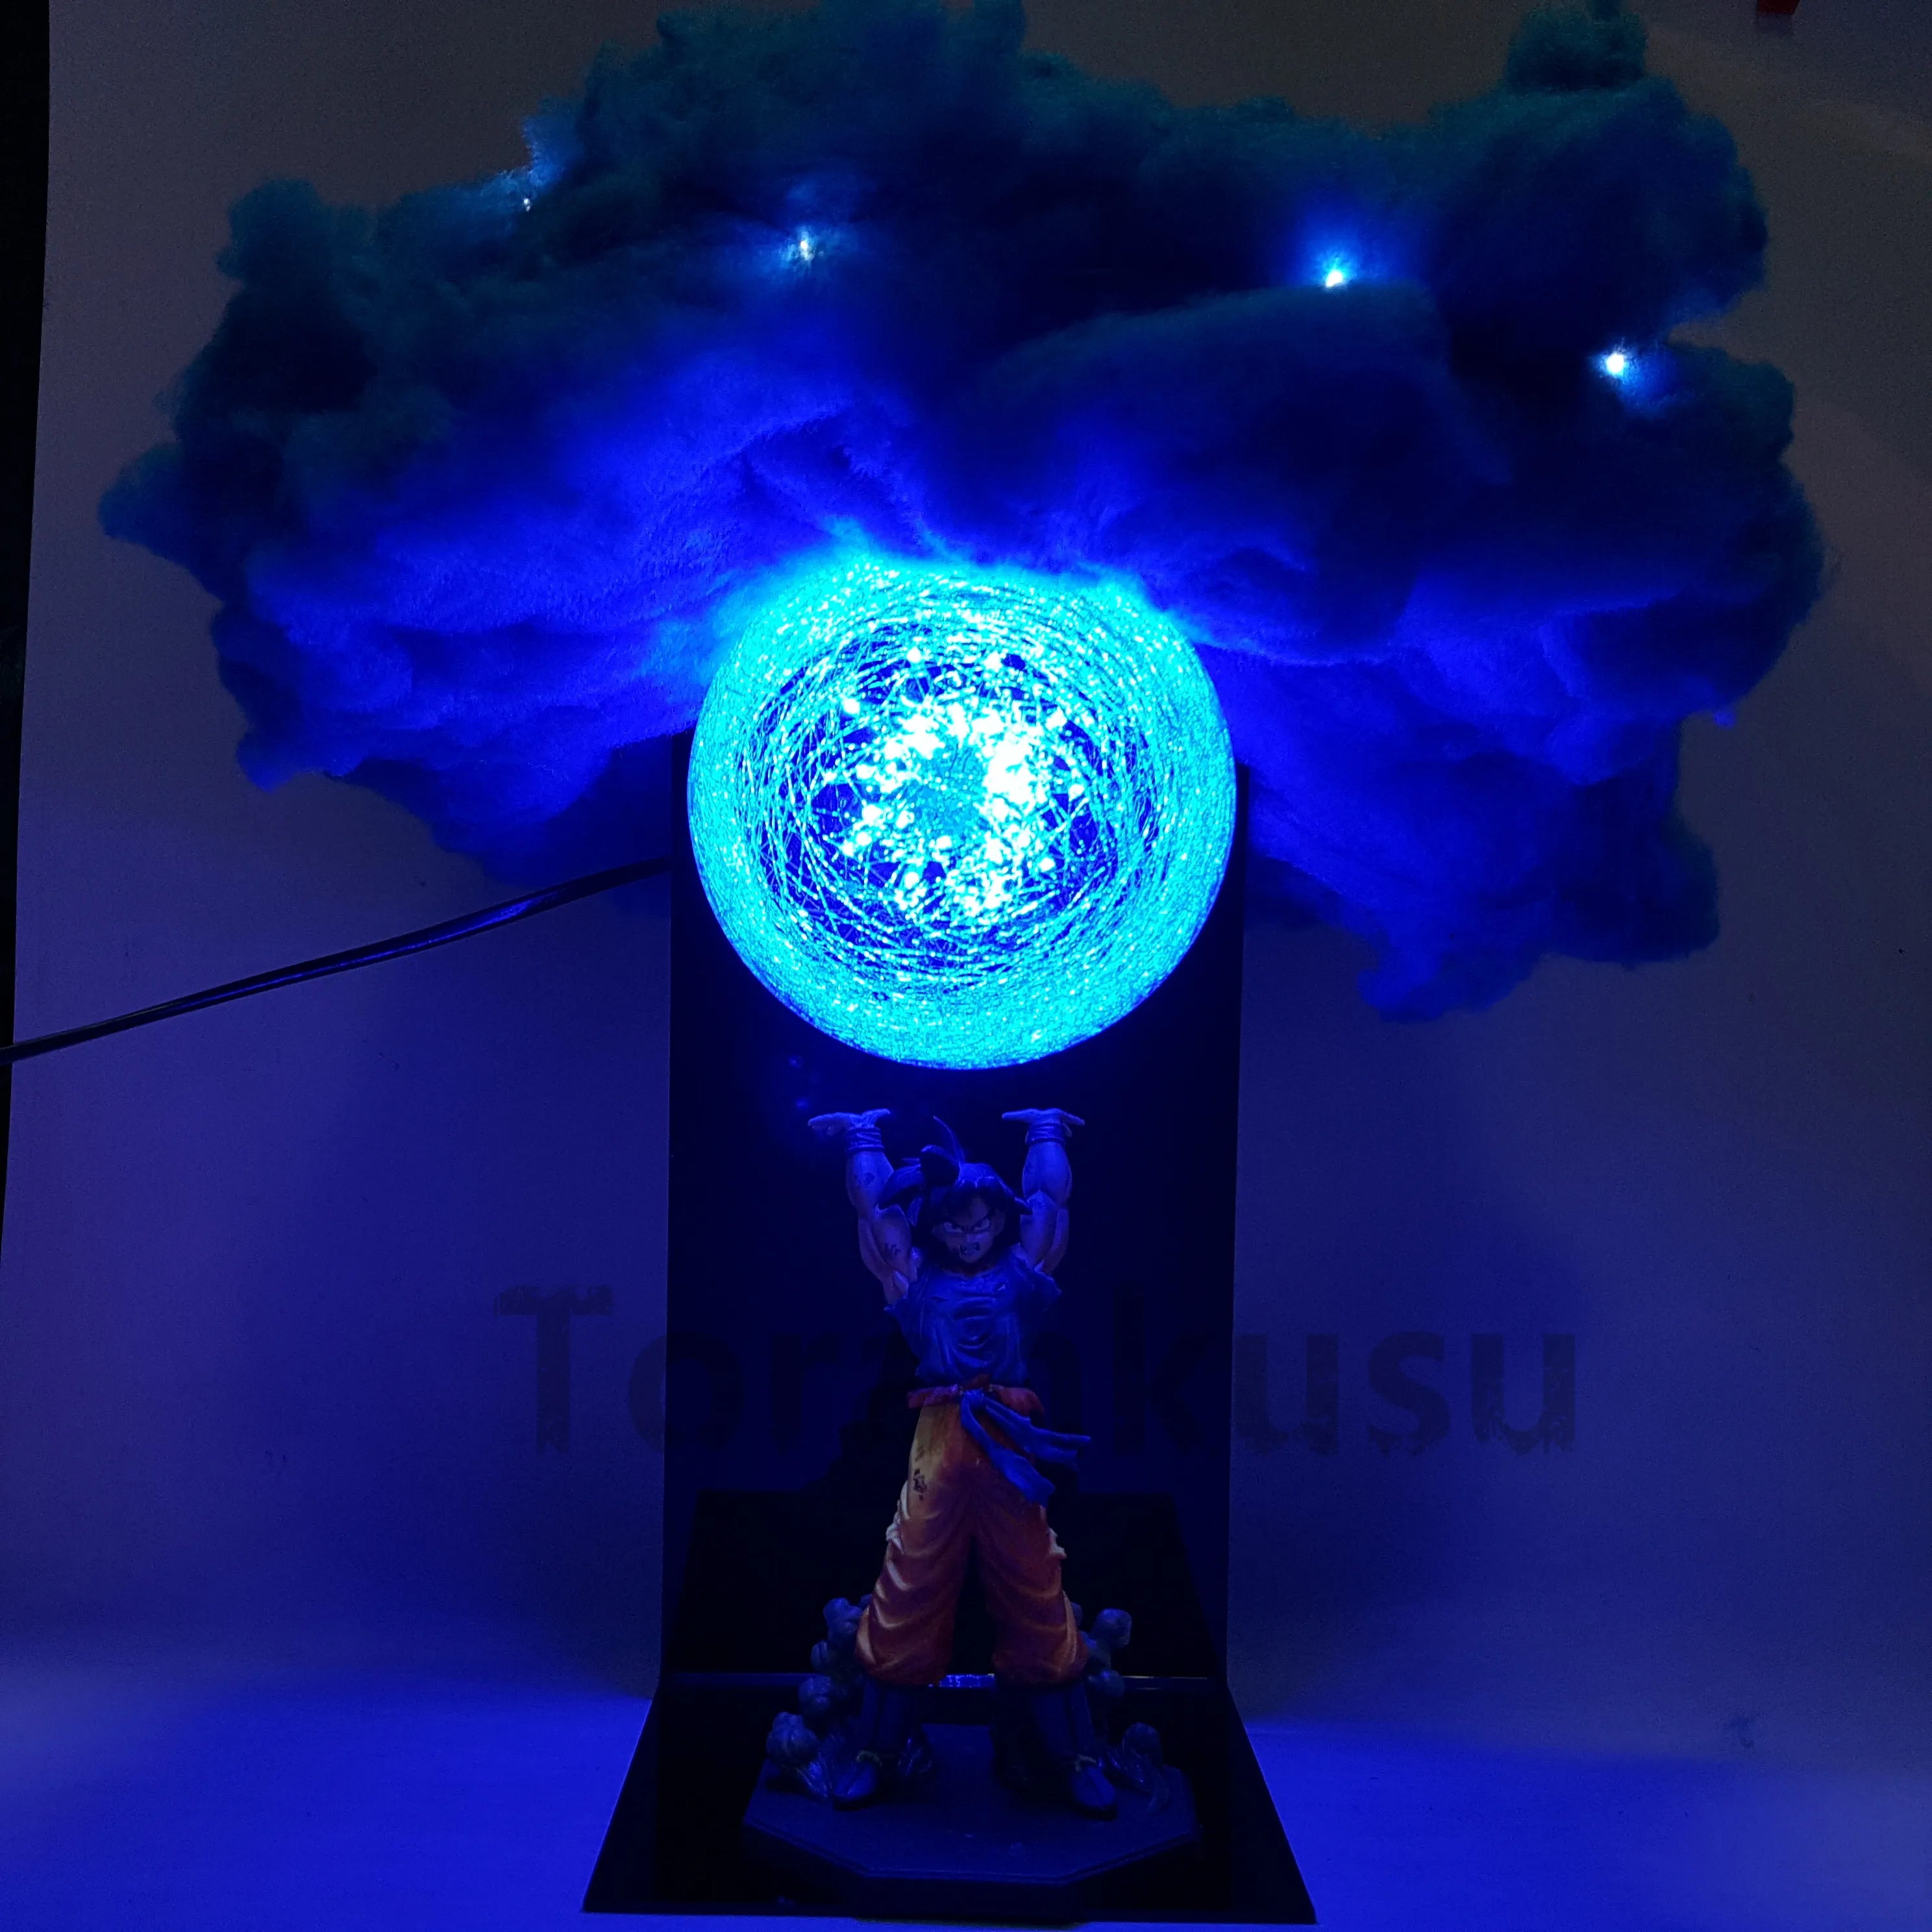 Dragon Ball Z Son Goku, Broly Super Saiyan Model with LED Lamp